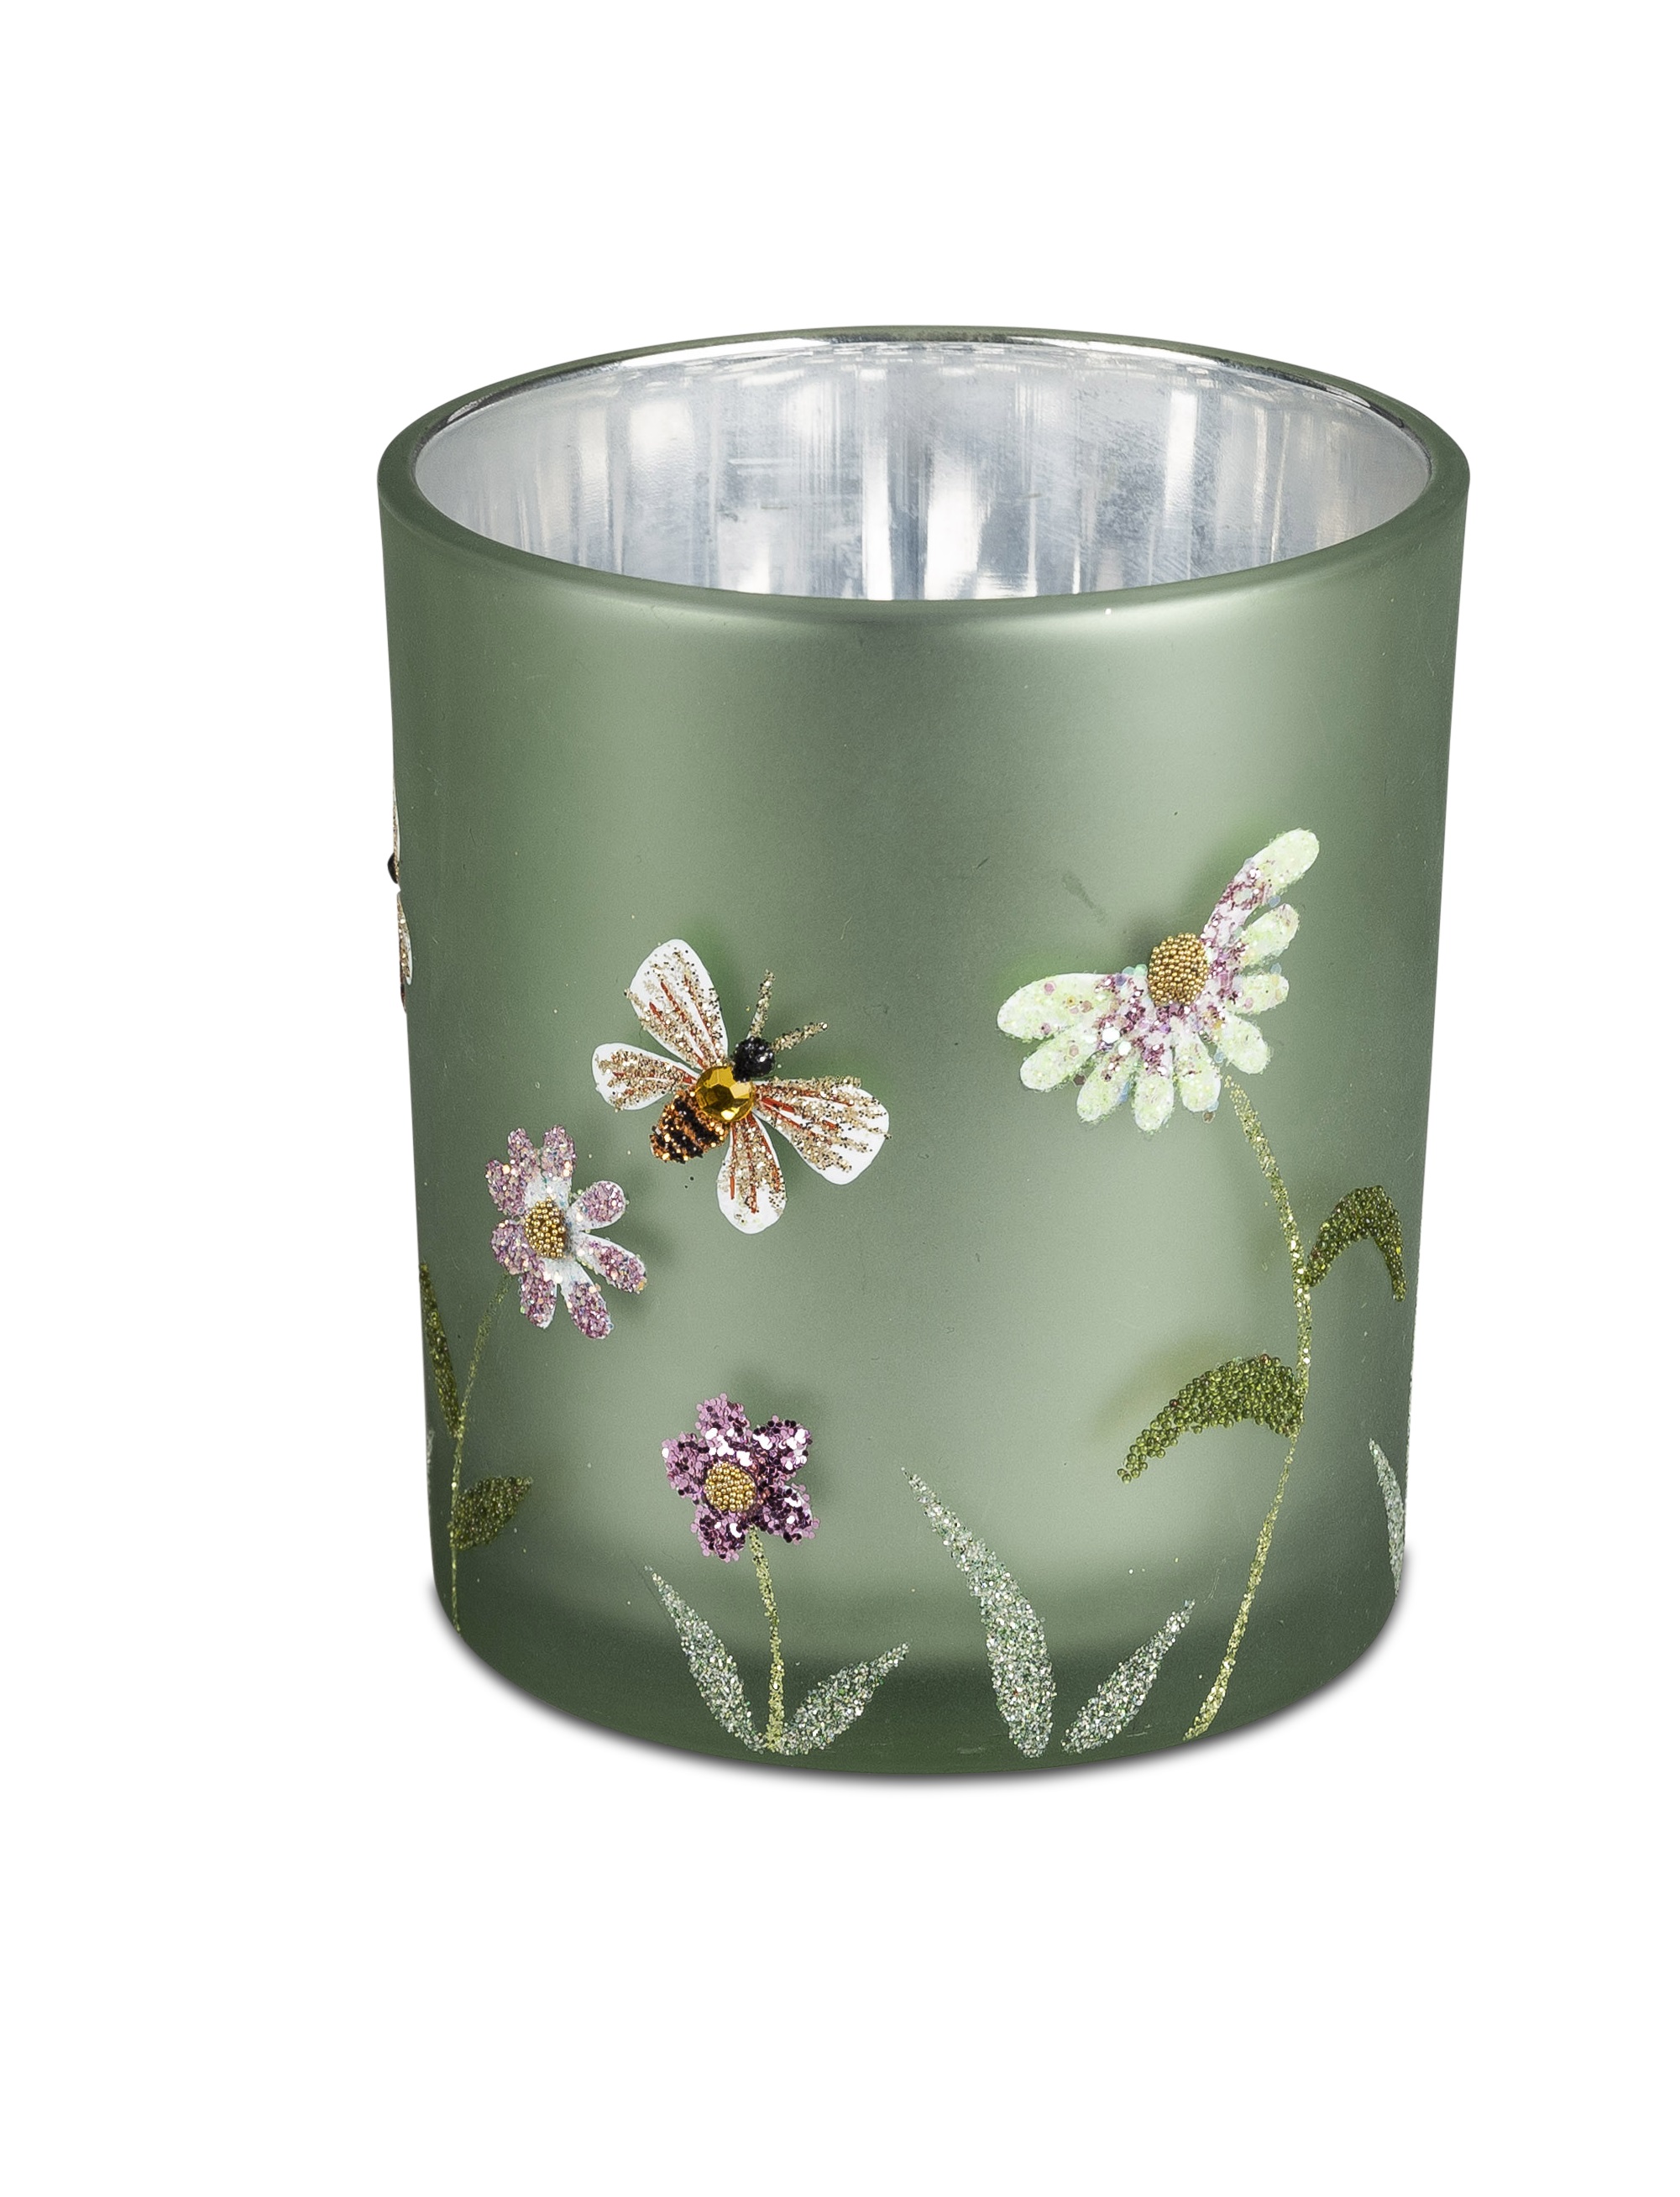 Deko Windlicht SOMMERWIESE H. 8 cm silber grün Glas Kerzenhalter Teelichthalter, Windlicht formano